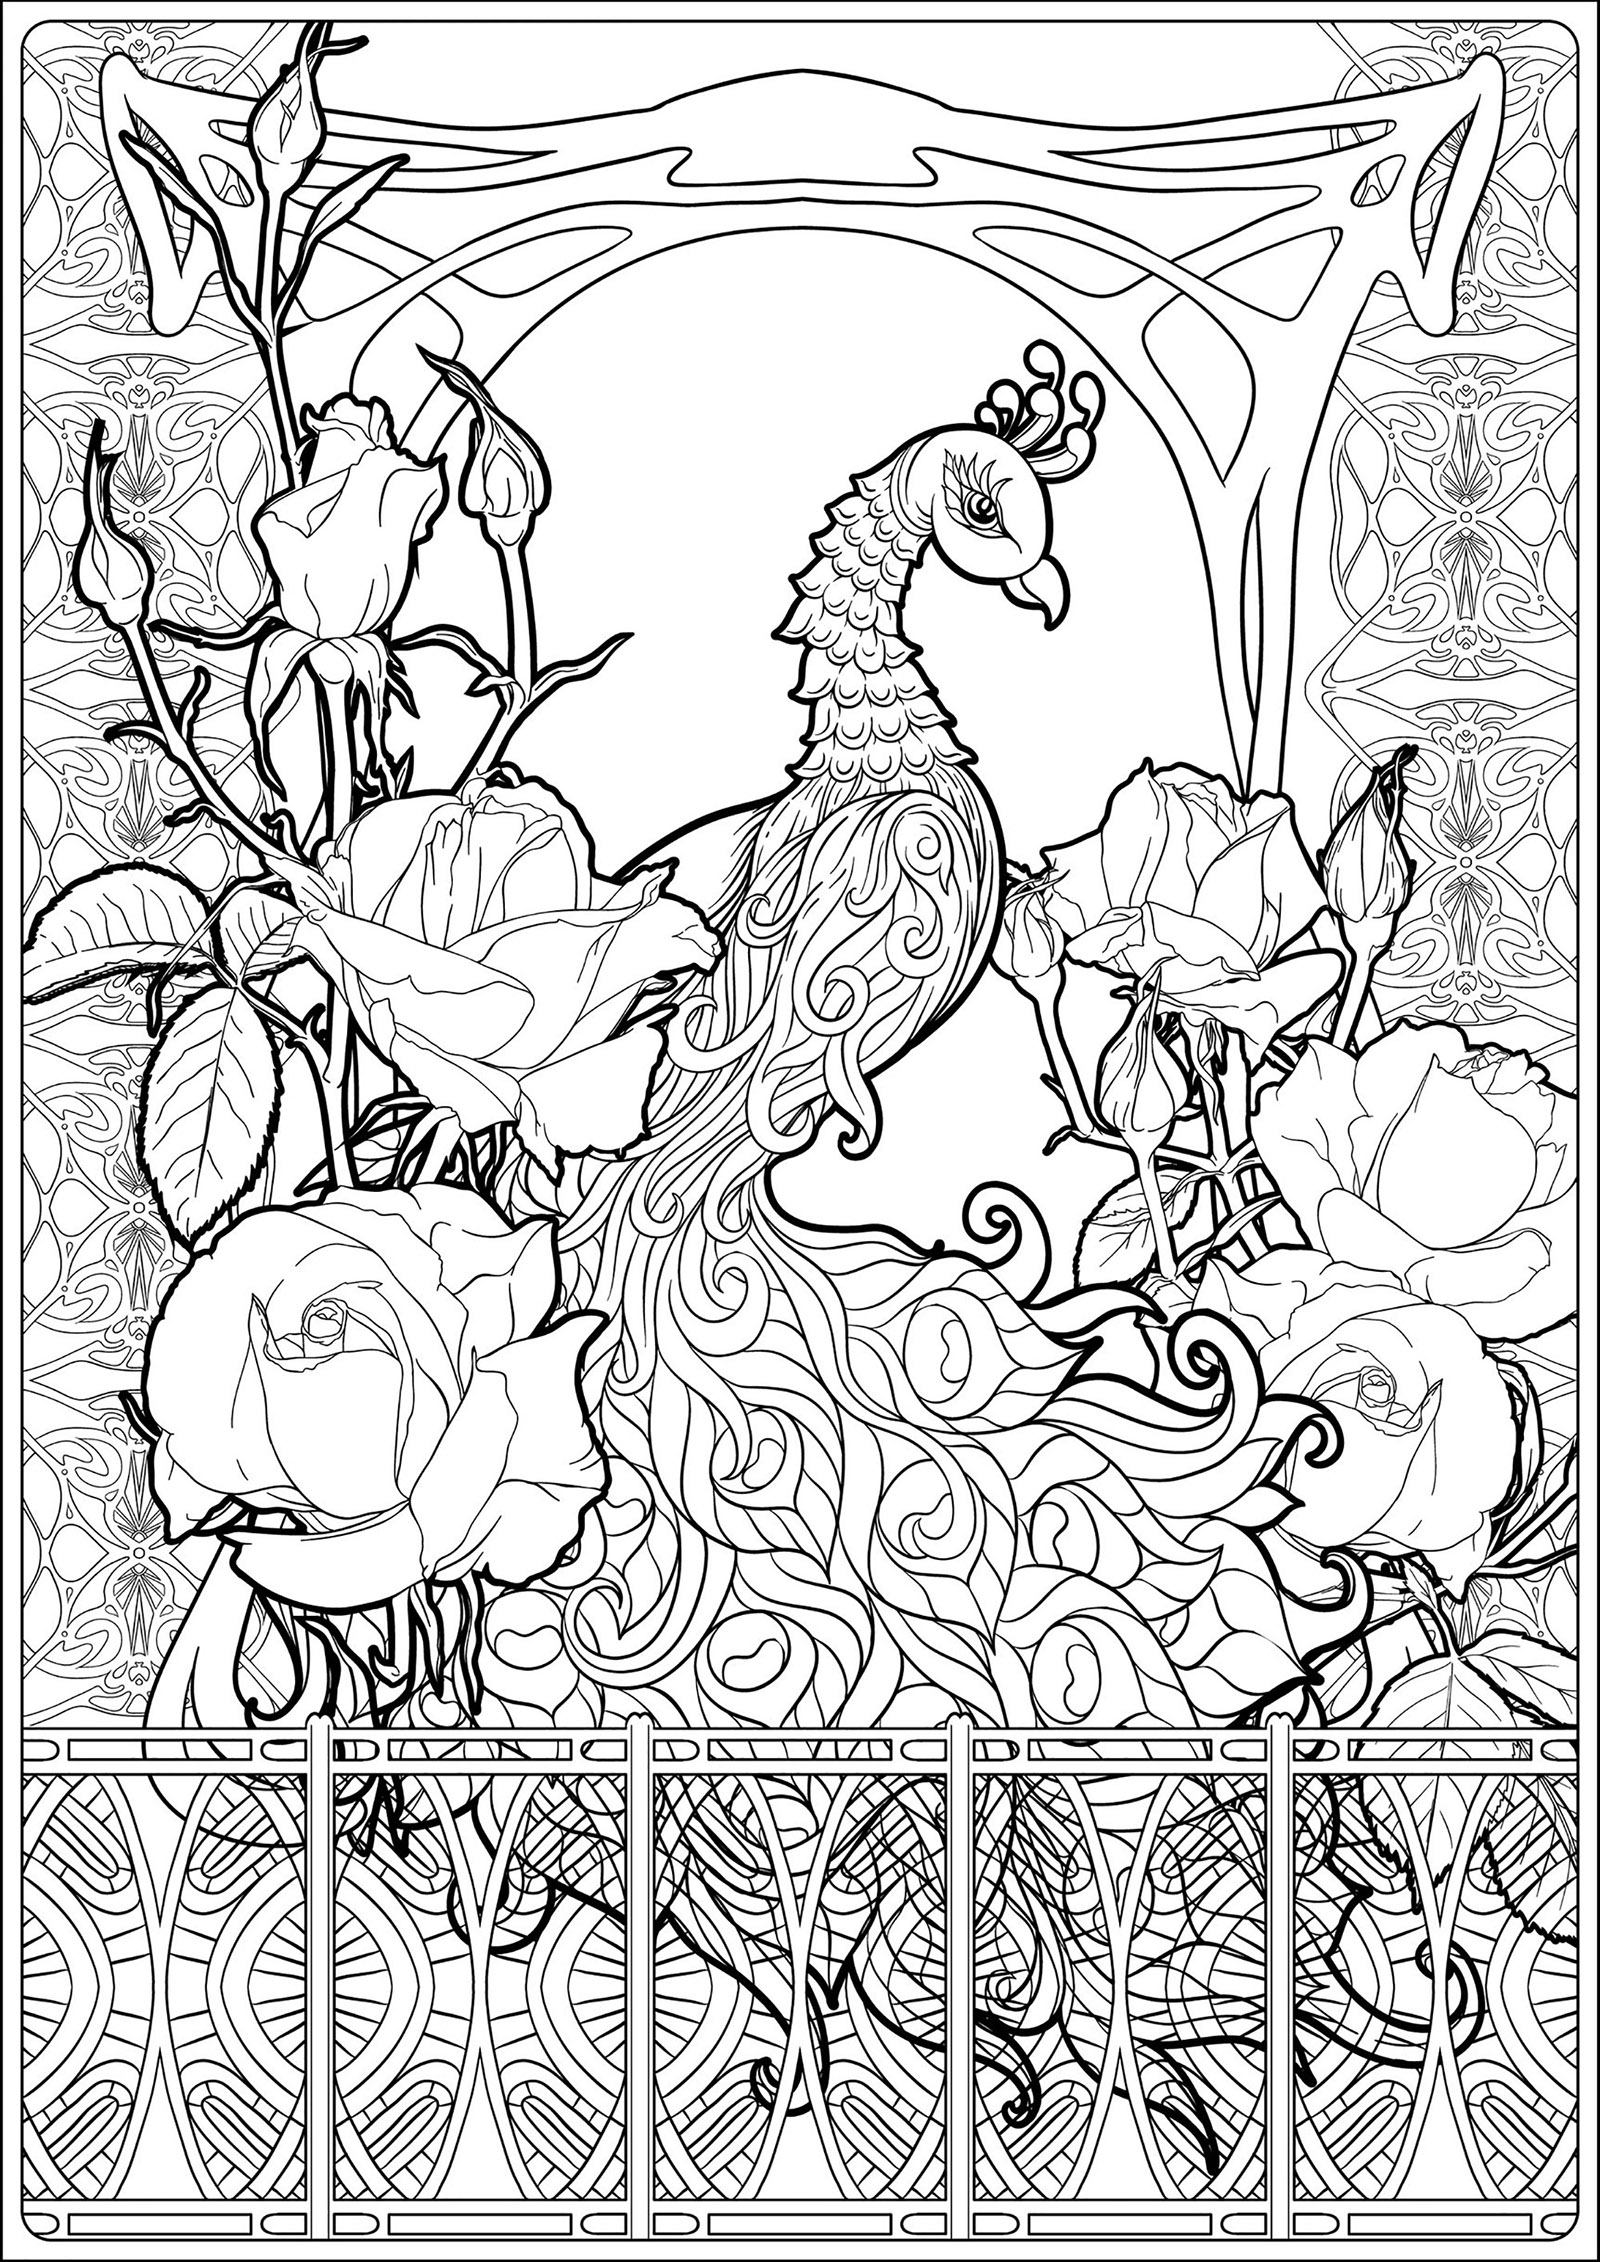 Pagina da colorare di un pavone, con molti elementi grafici legati all'Art Nouveau e belle rose